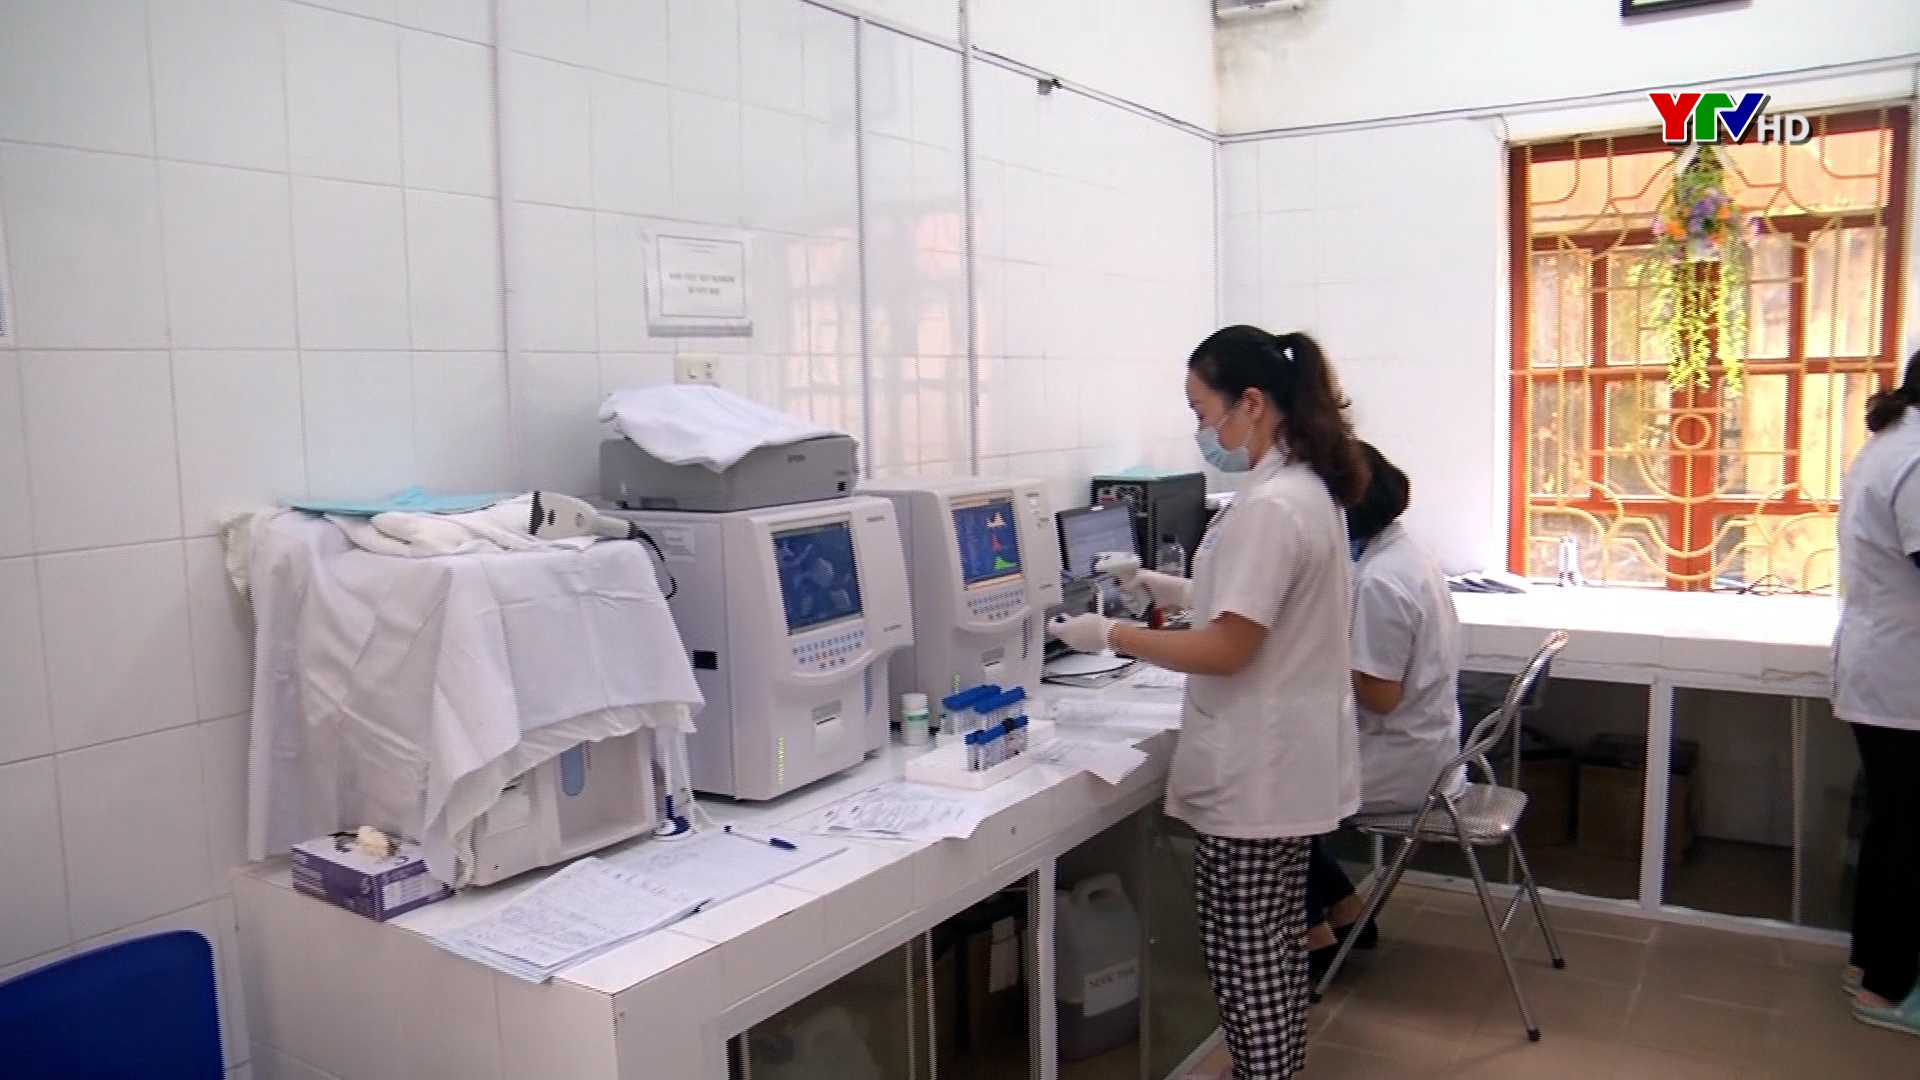 Trung tâm Y tế thành phố Yên Bái đẩy mạnh ứng dụng công nghệ thông tin trong khám, chữa bệnh